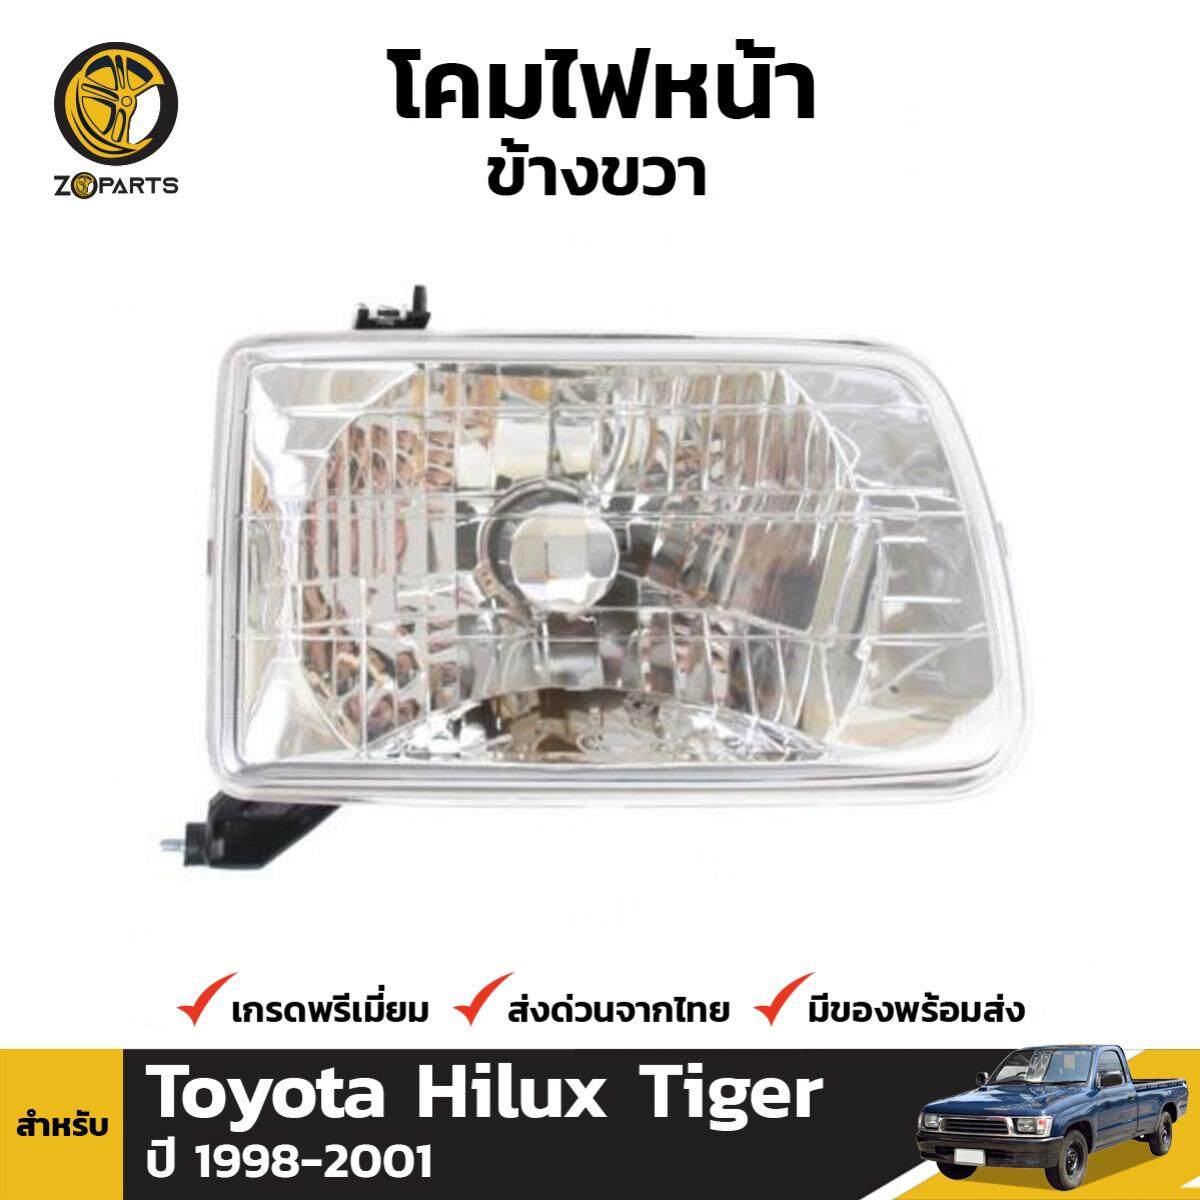 ปลั๊กหัวฉีด โตโยต้า ไฮลักซ์ ไทเกอร์ ดี4ดี (Toyota Hilux Tiger D4D) ชุด ...